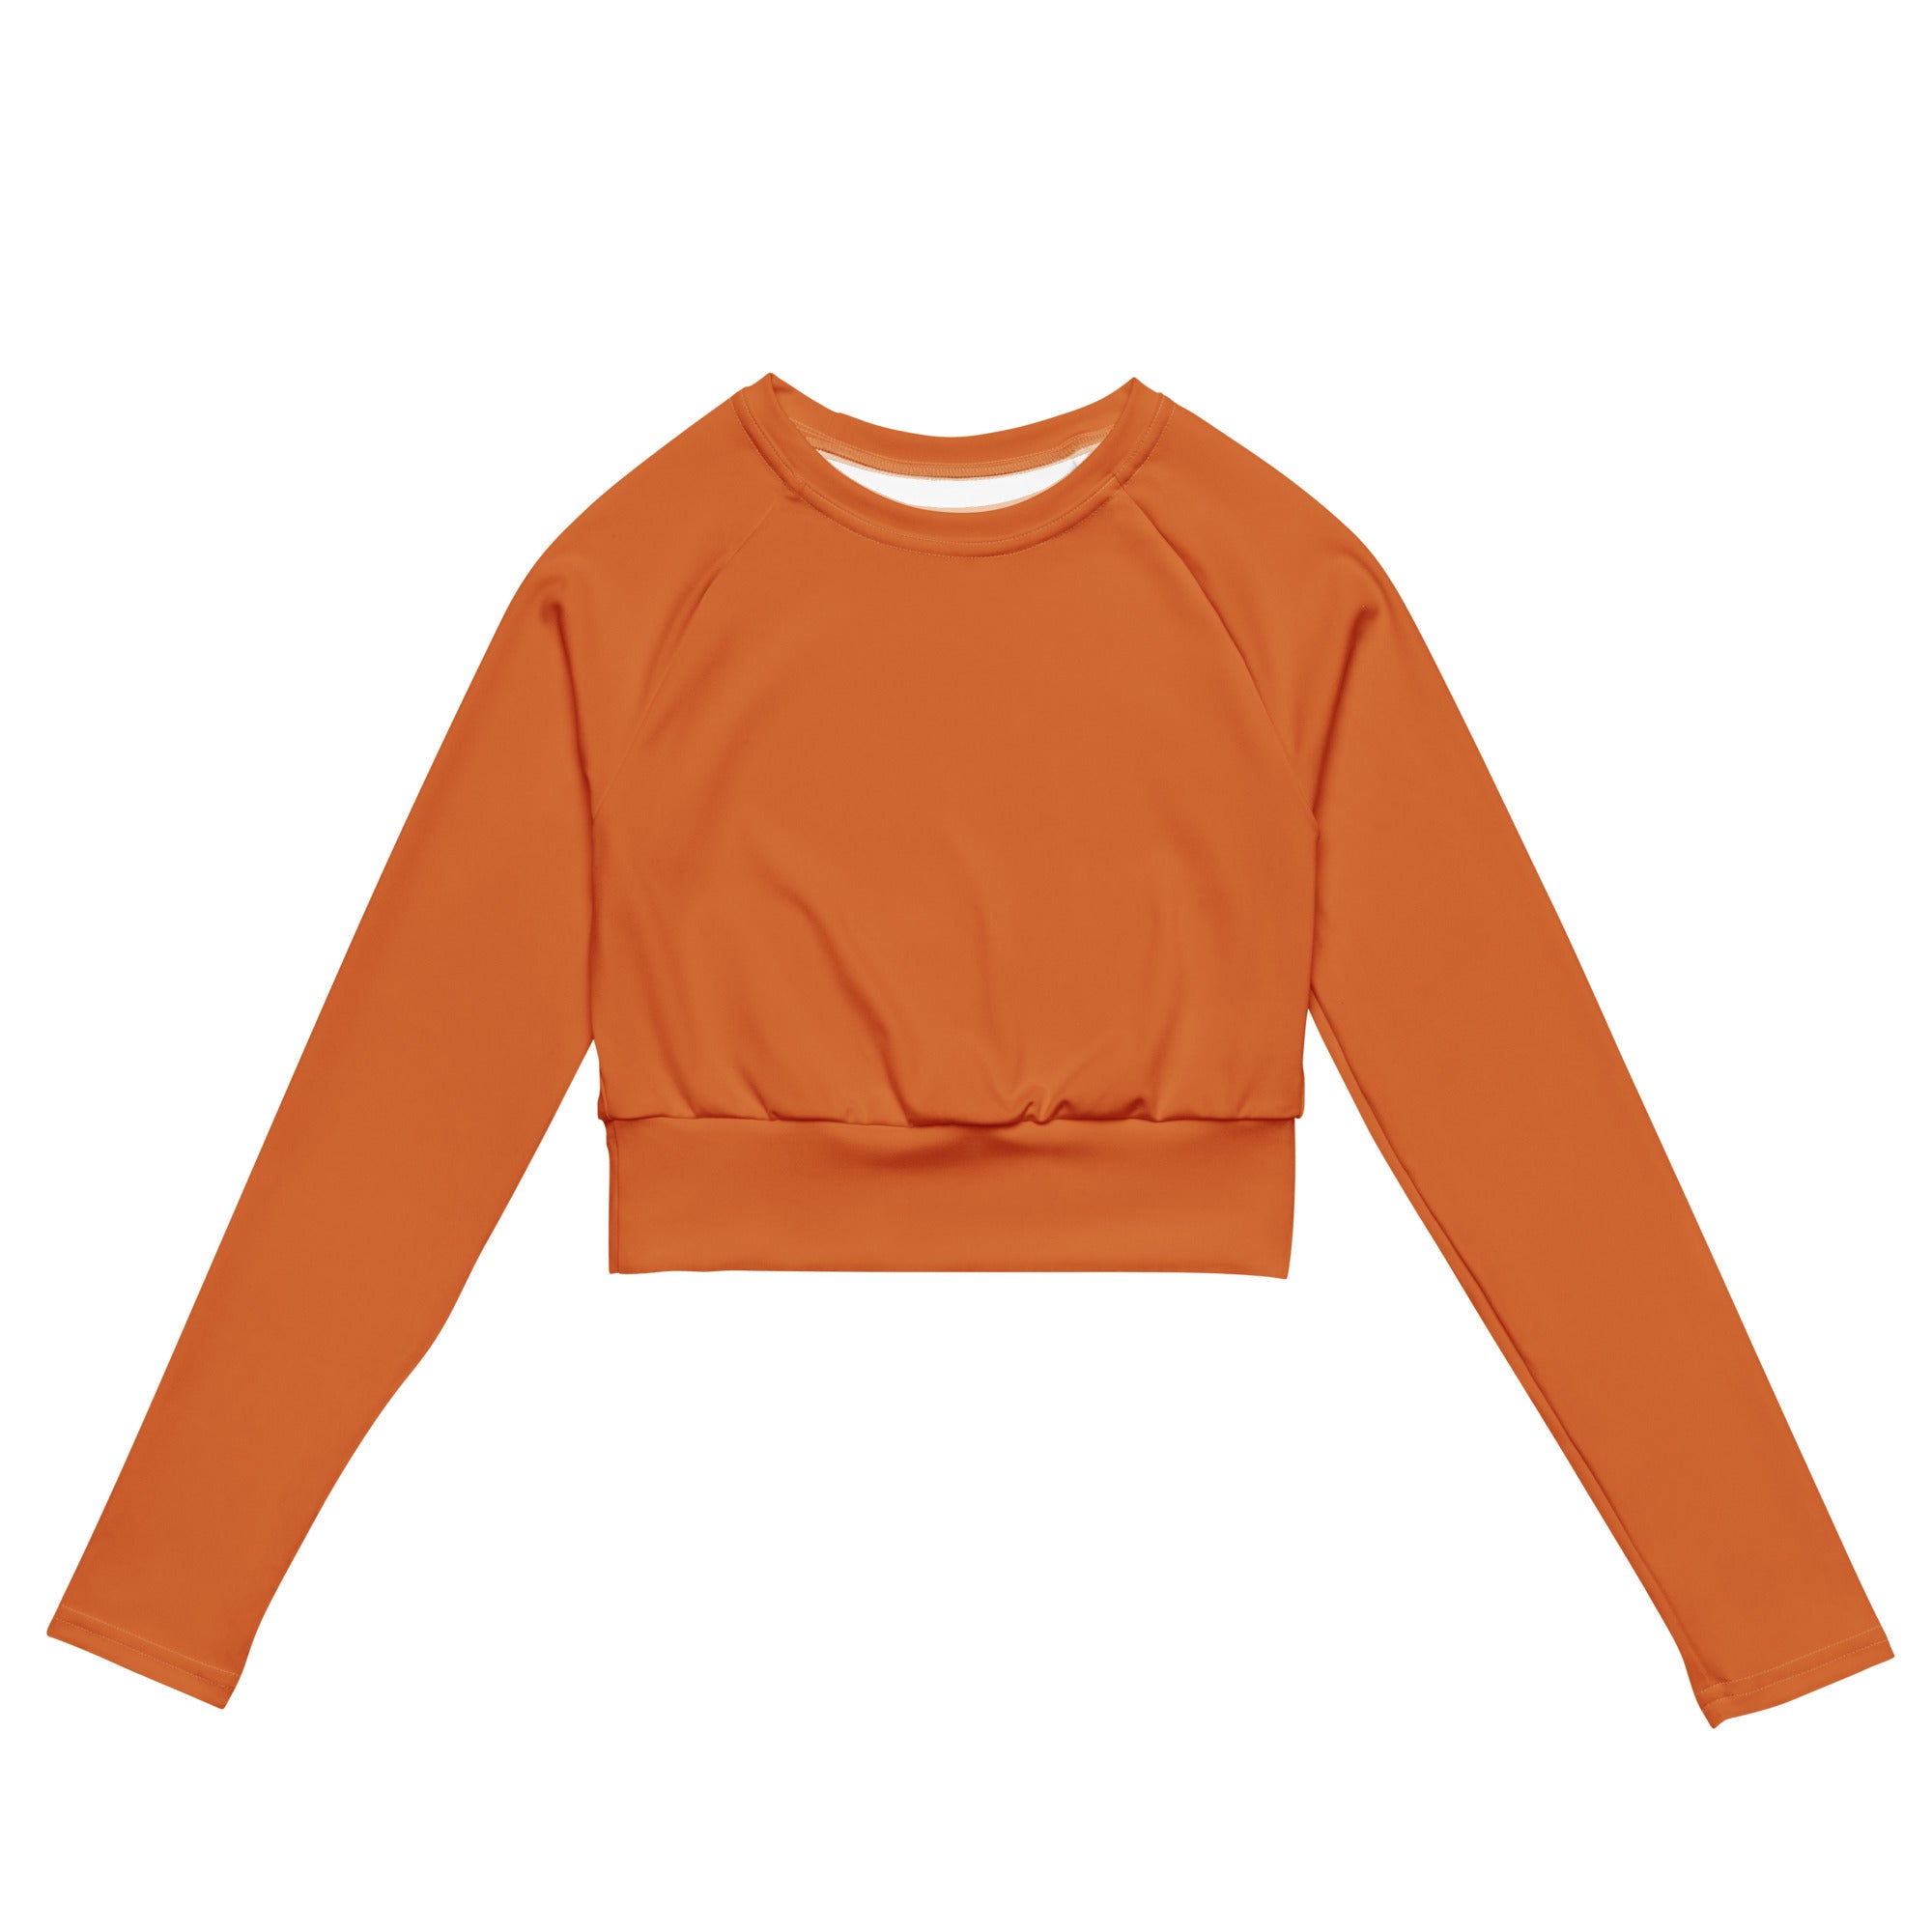 Tangerine Orange Recycled Long-sleeve Crop Top